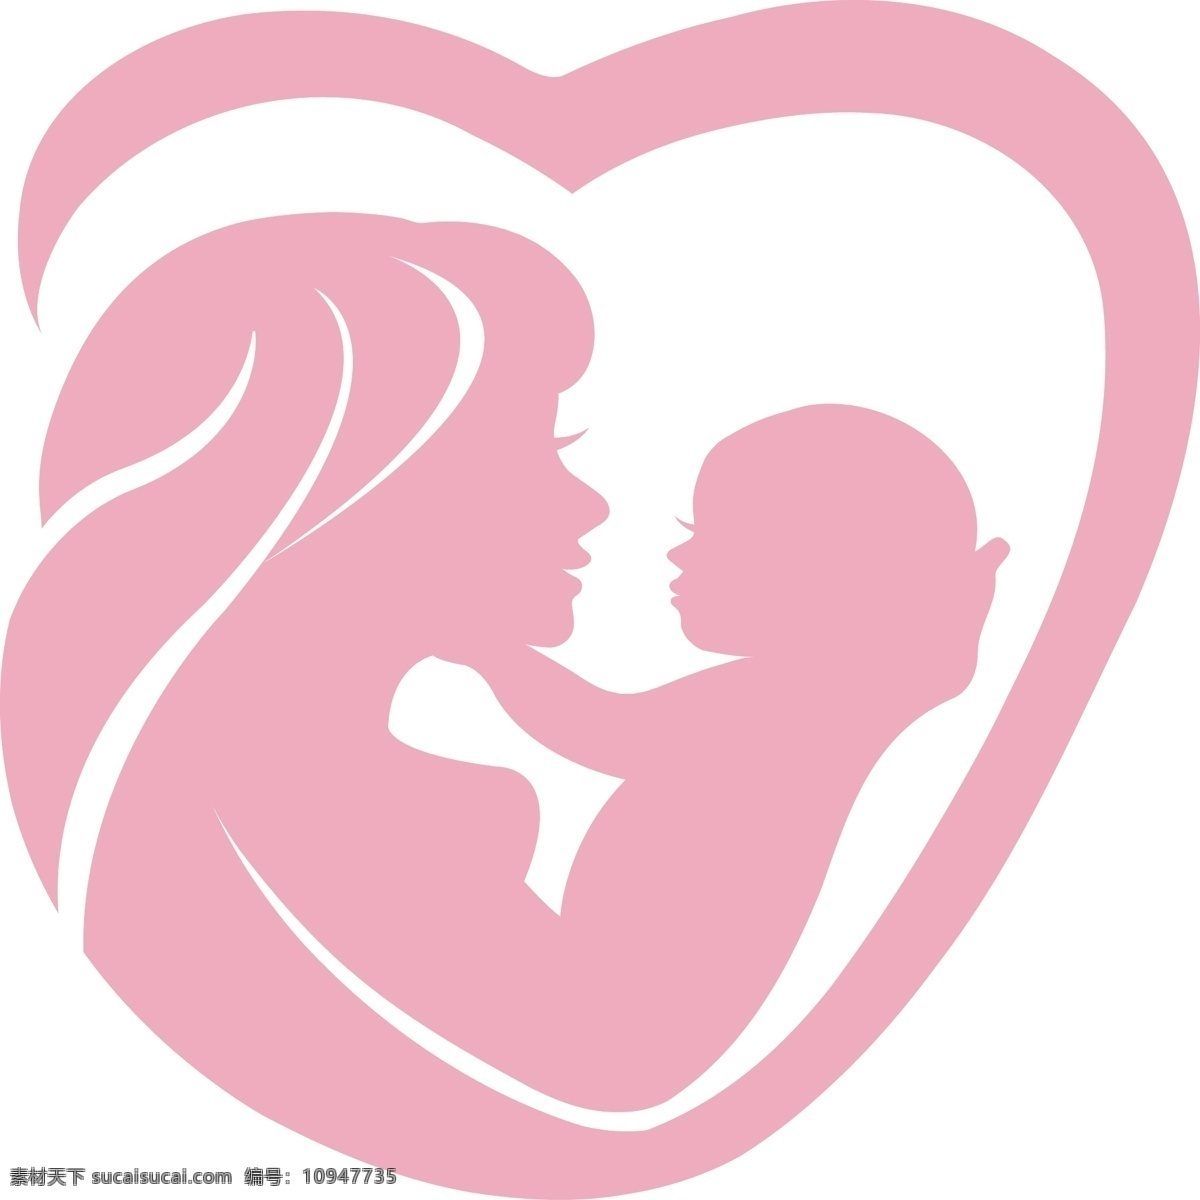 产后 修复 logo 母婴 母婴logo 女性logo 包装设计